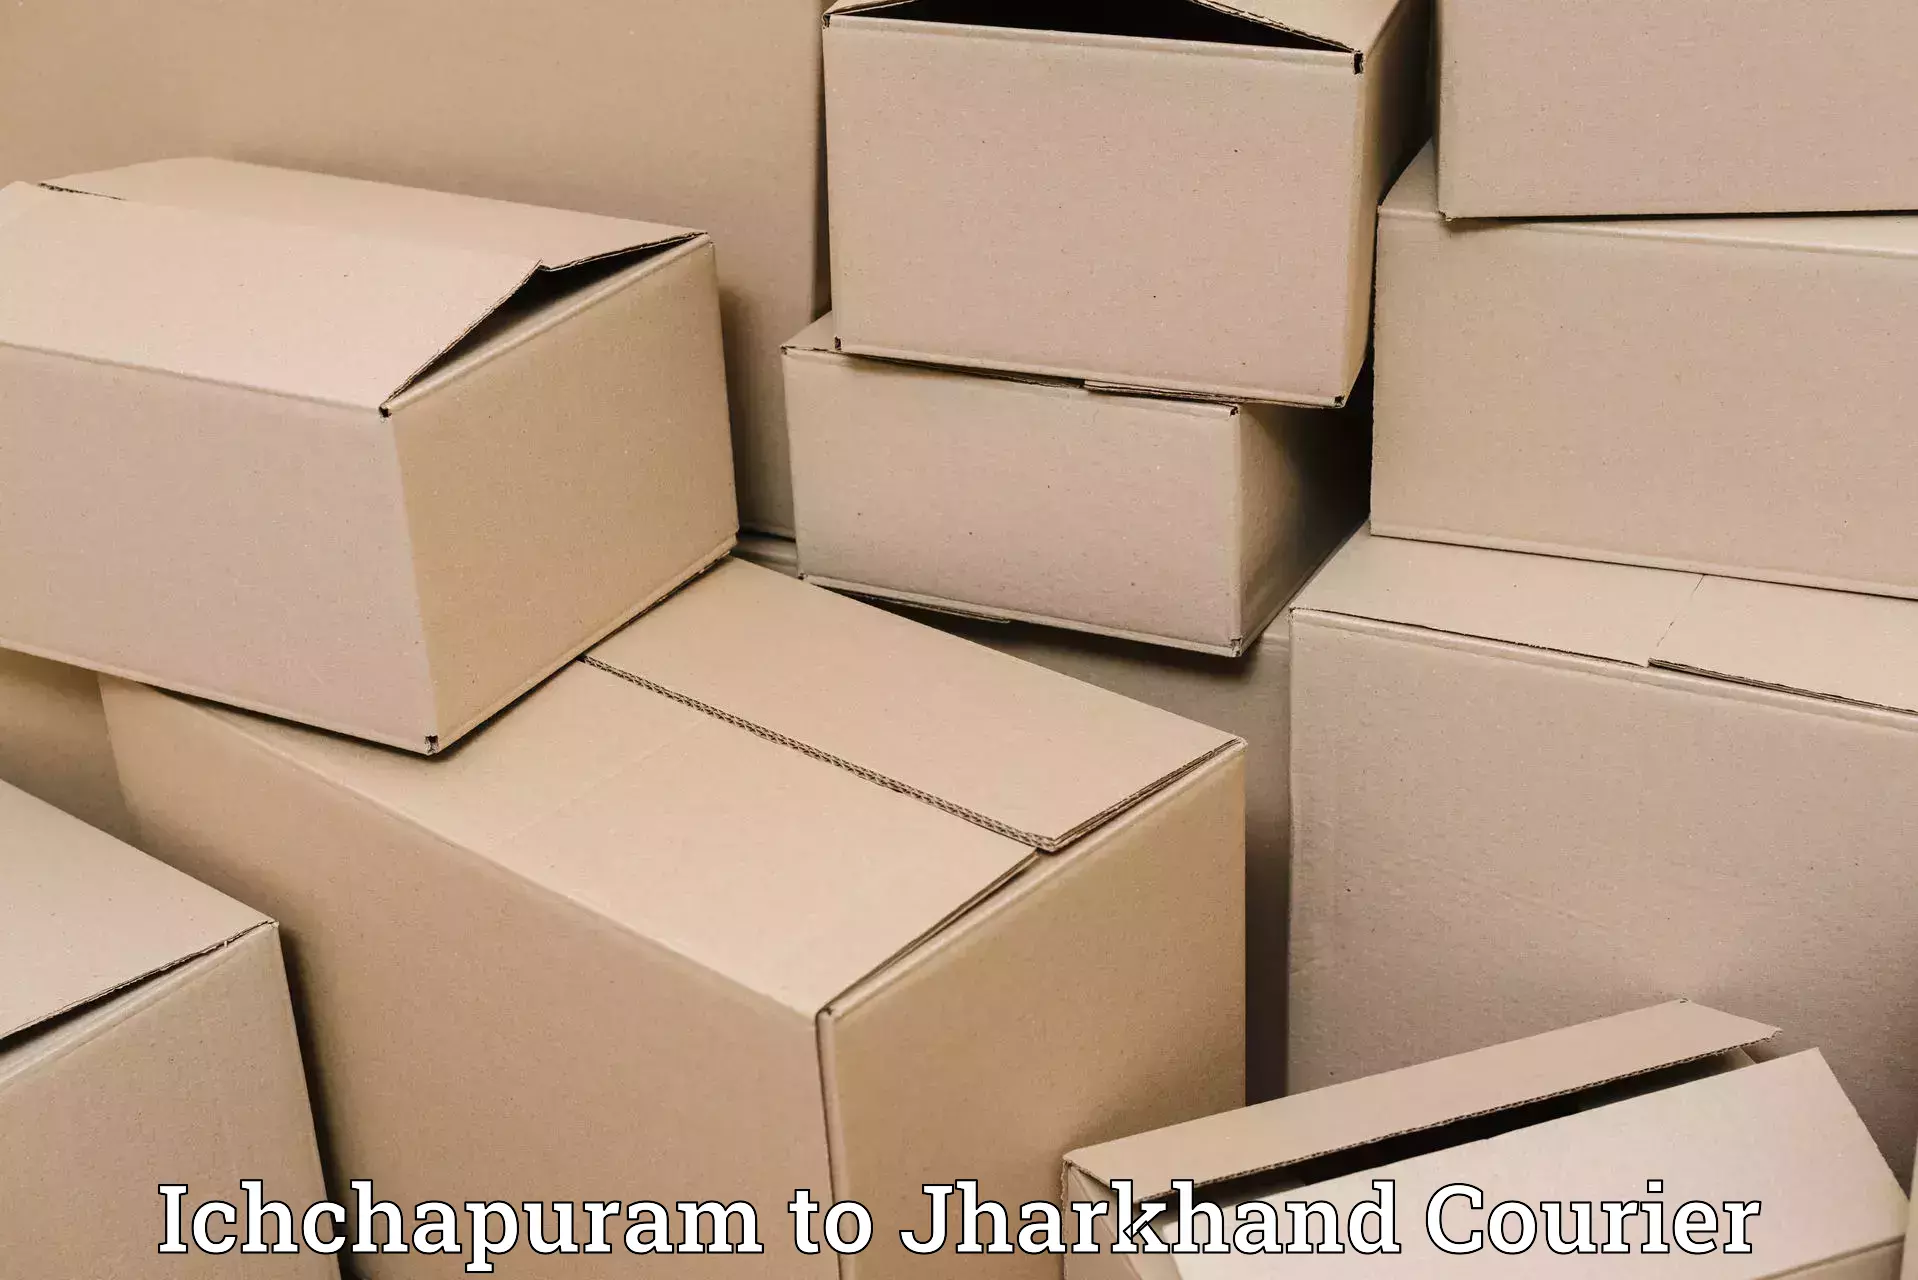 Customer-oriented courier services Ichchapuram to Bokaro